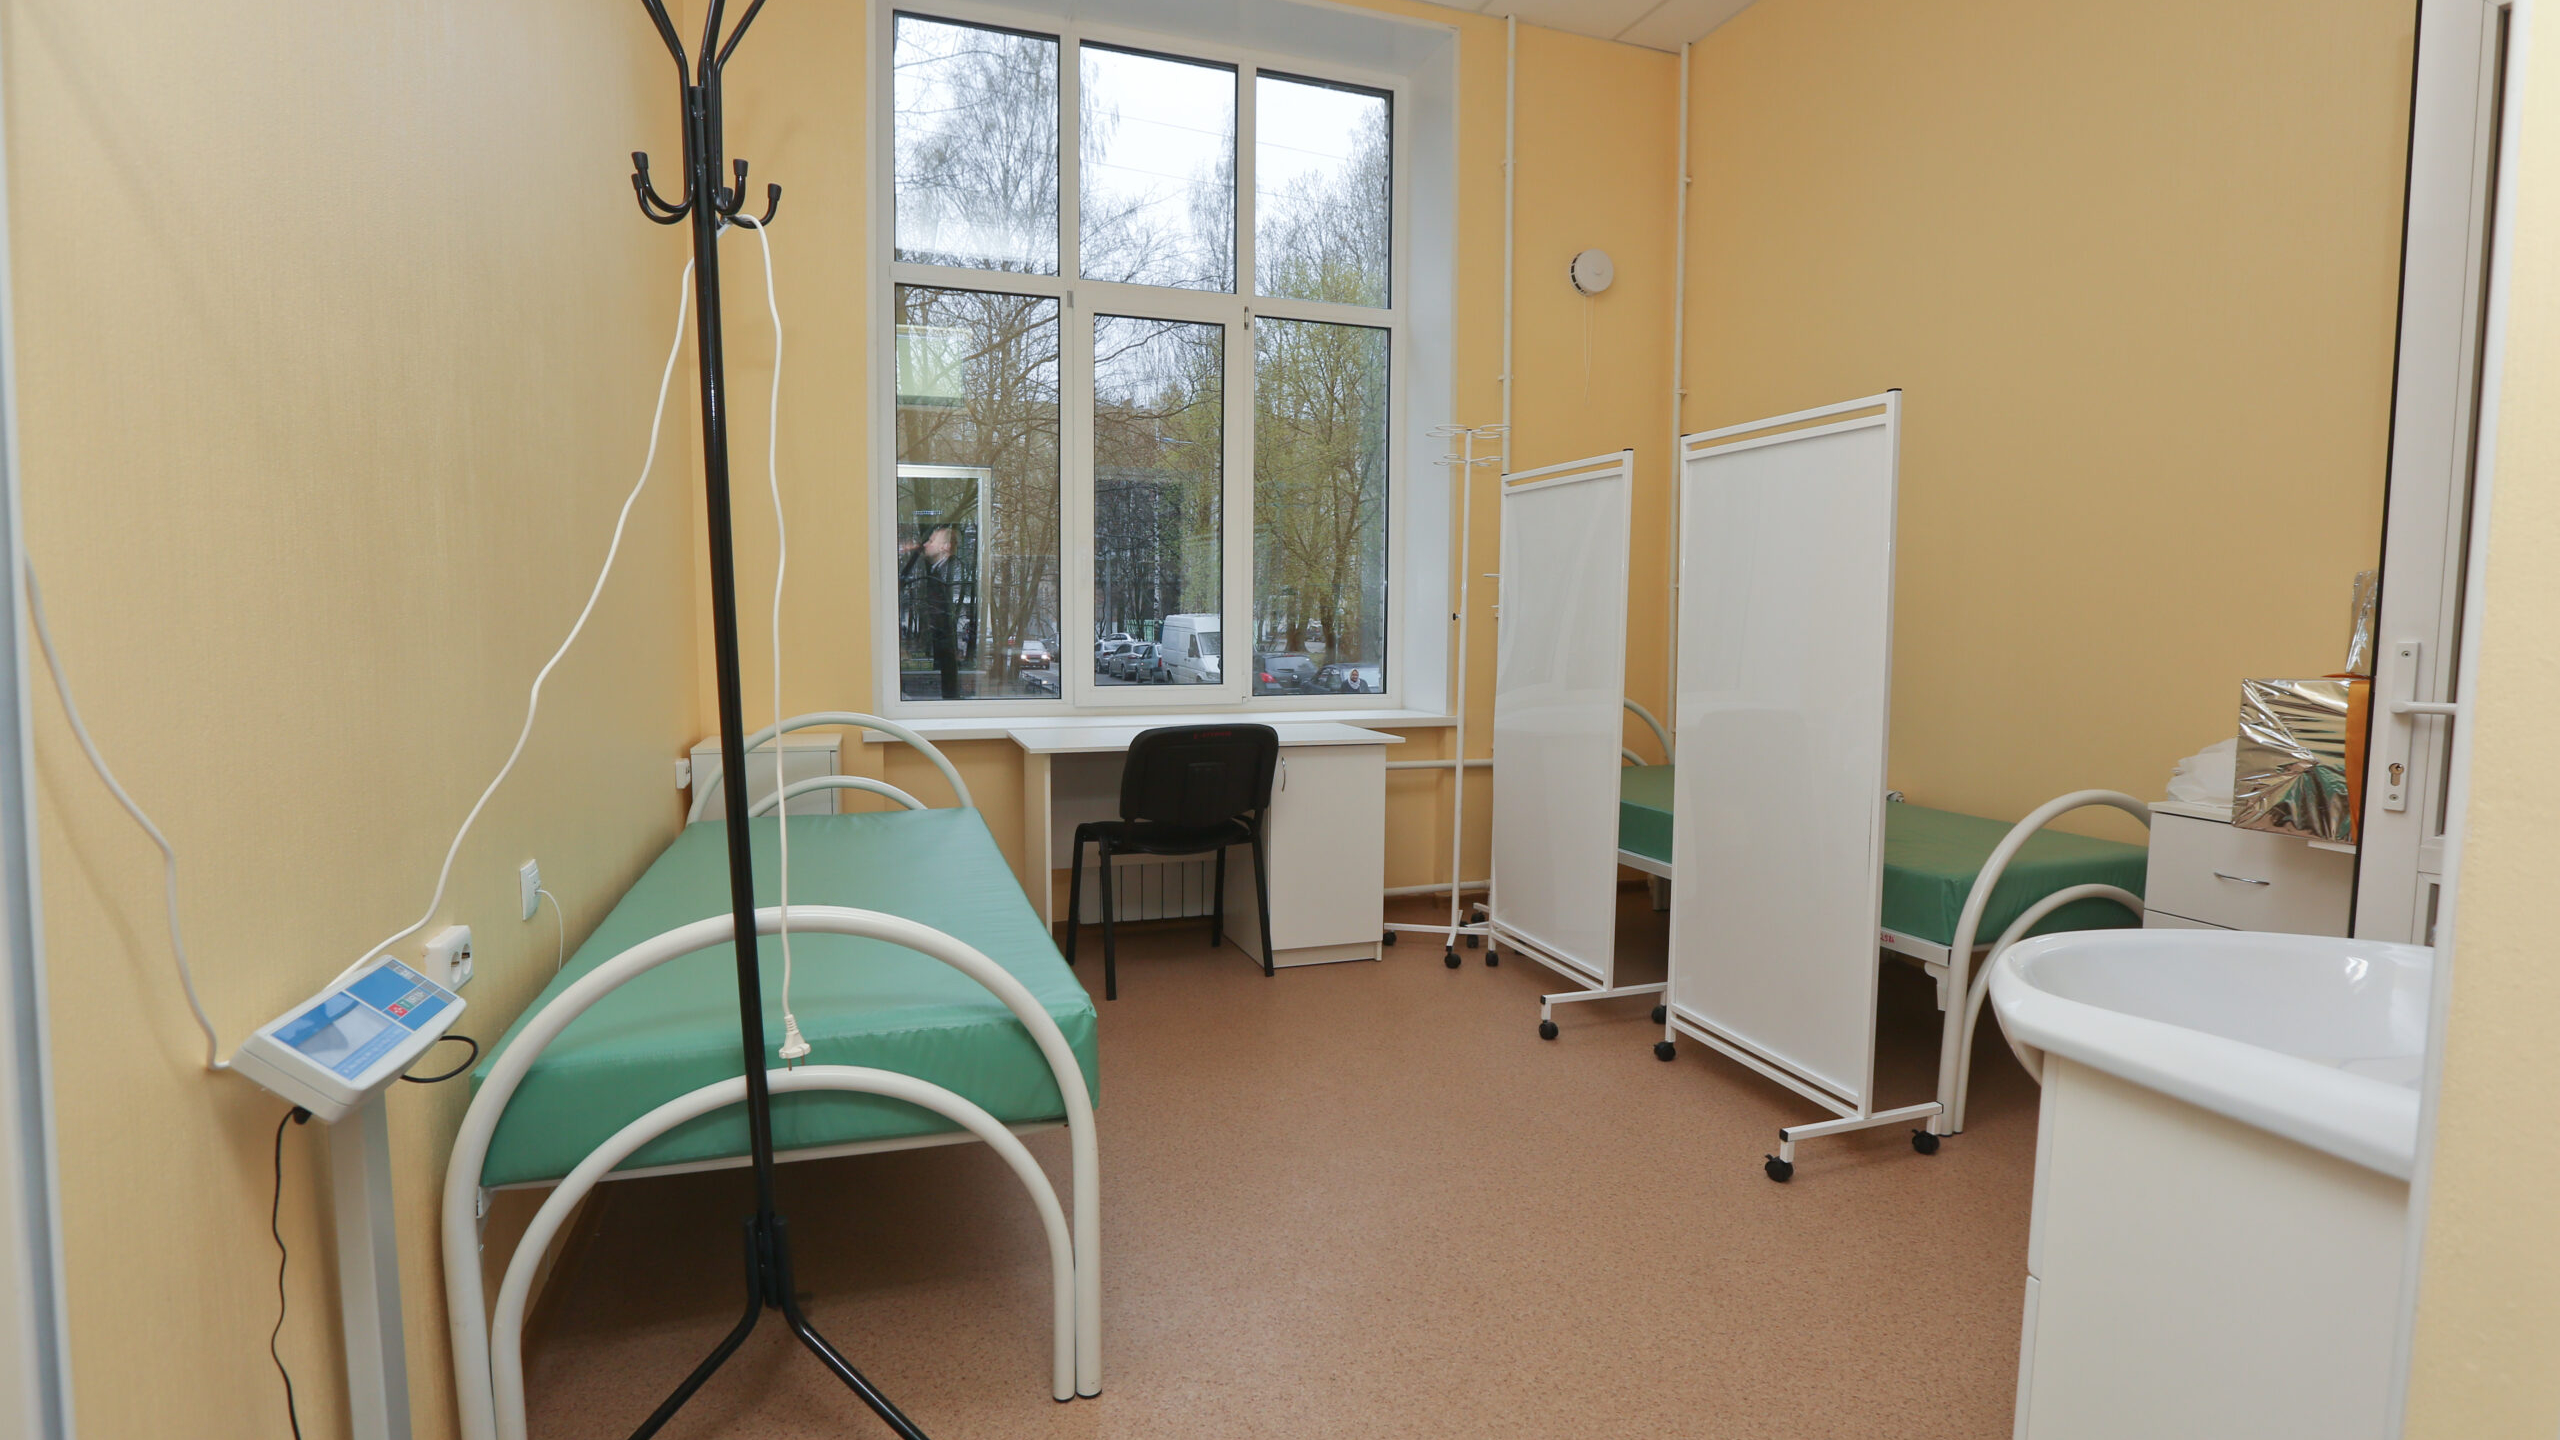 Пациент больницы в Петербурге избил своего соседа по палате до смерти